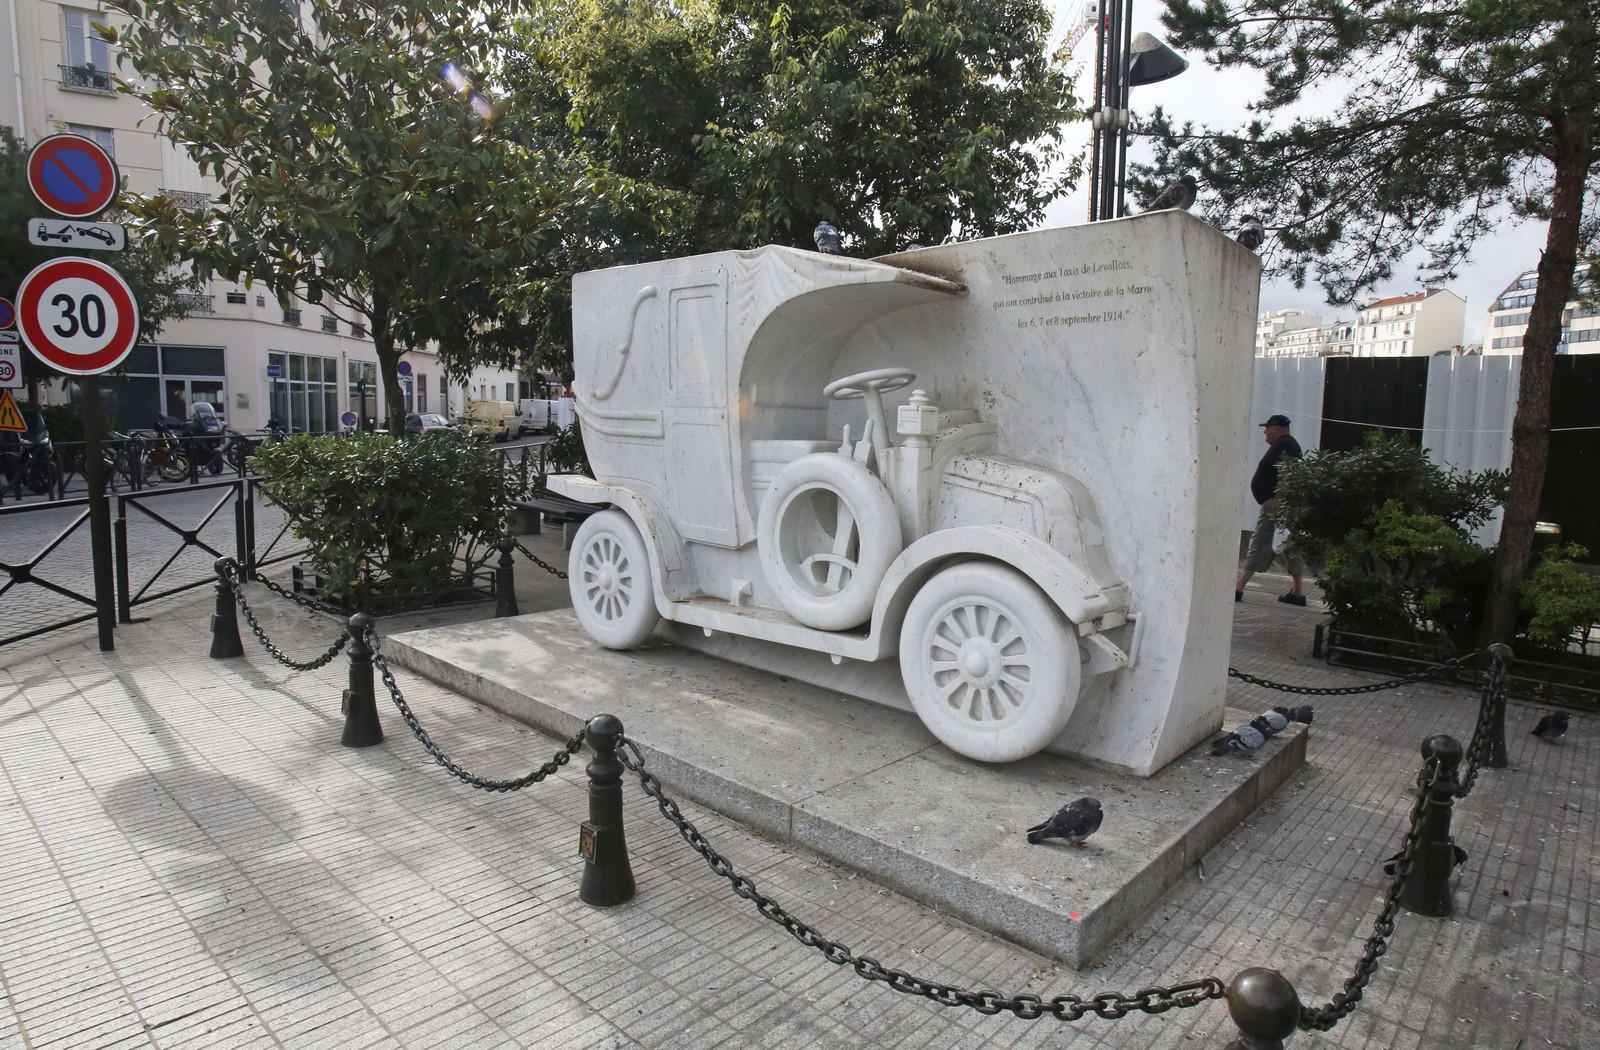 Mémorial du Taxi de la Marne à Levallois Perret,
Auteurs  : Remy de la Mauviniere/AP/SIPA,
Numéro de reportage  : AP21619421_000006.